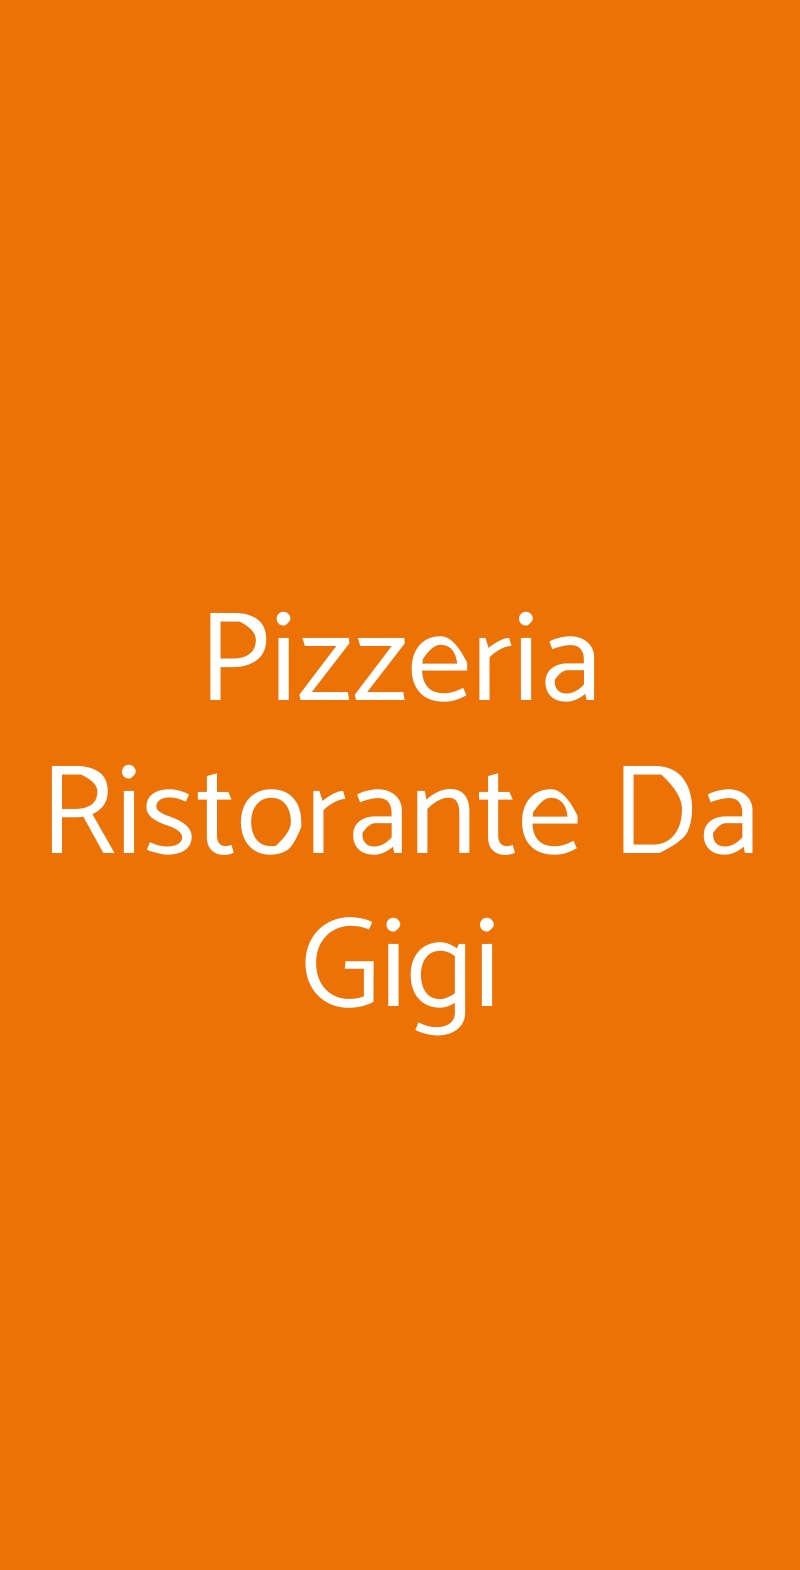 Pizzeria Ristorante Da Gigi Venezia menù 1 pagina